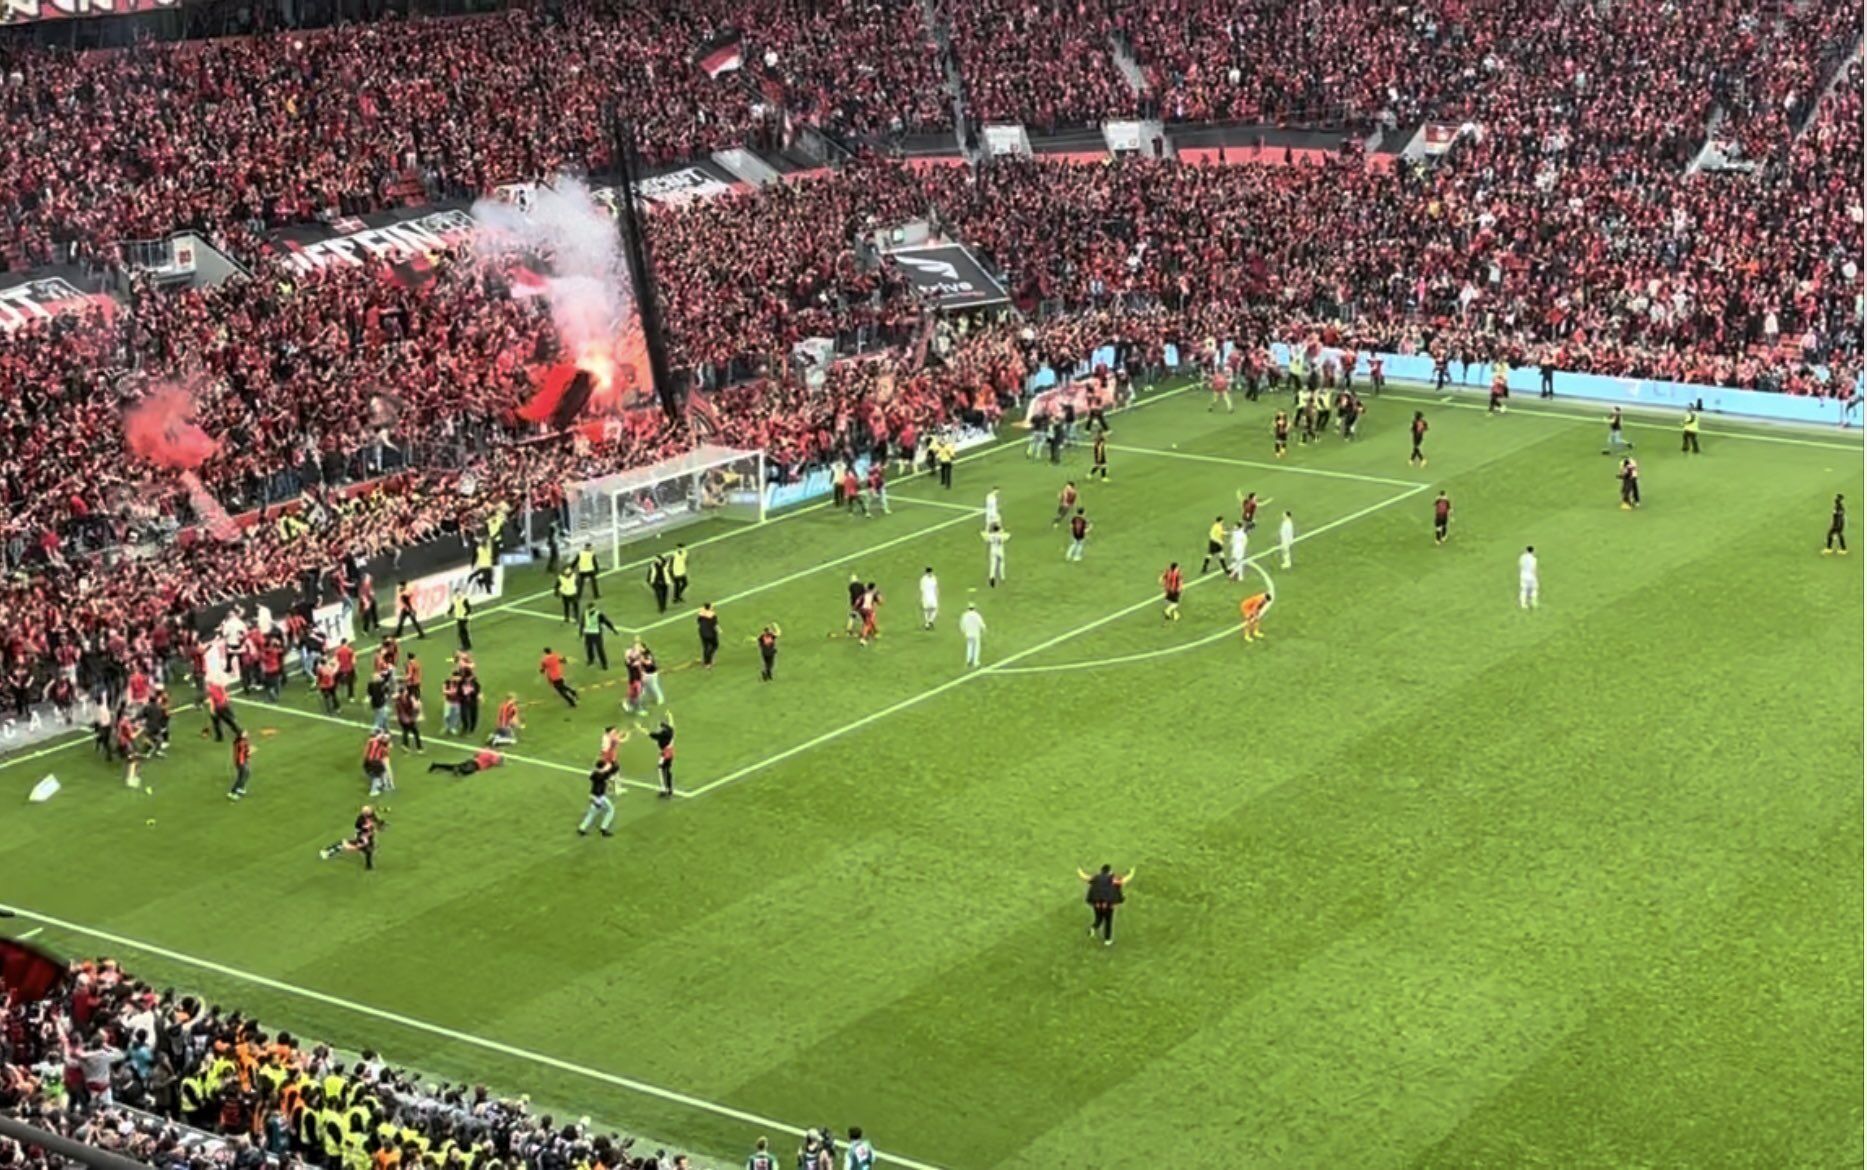 Po raz pierwszy w historii. W piłkarskich mistrzostwach Niemiec doszło do wydarzenia, na które czekano od 120 lat. Wideo